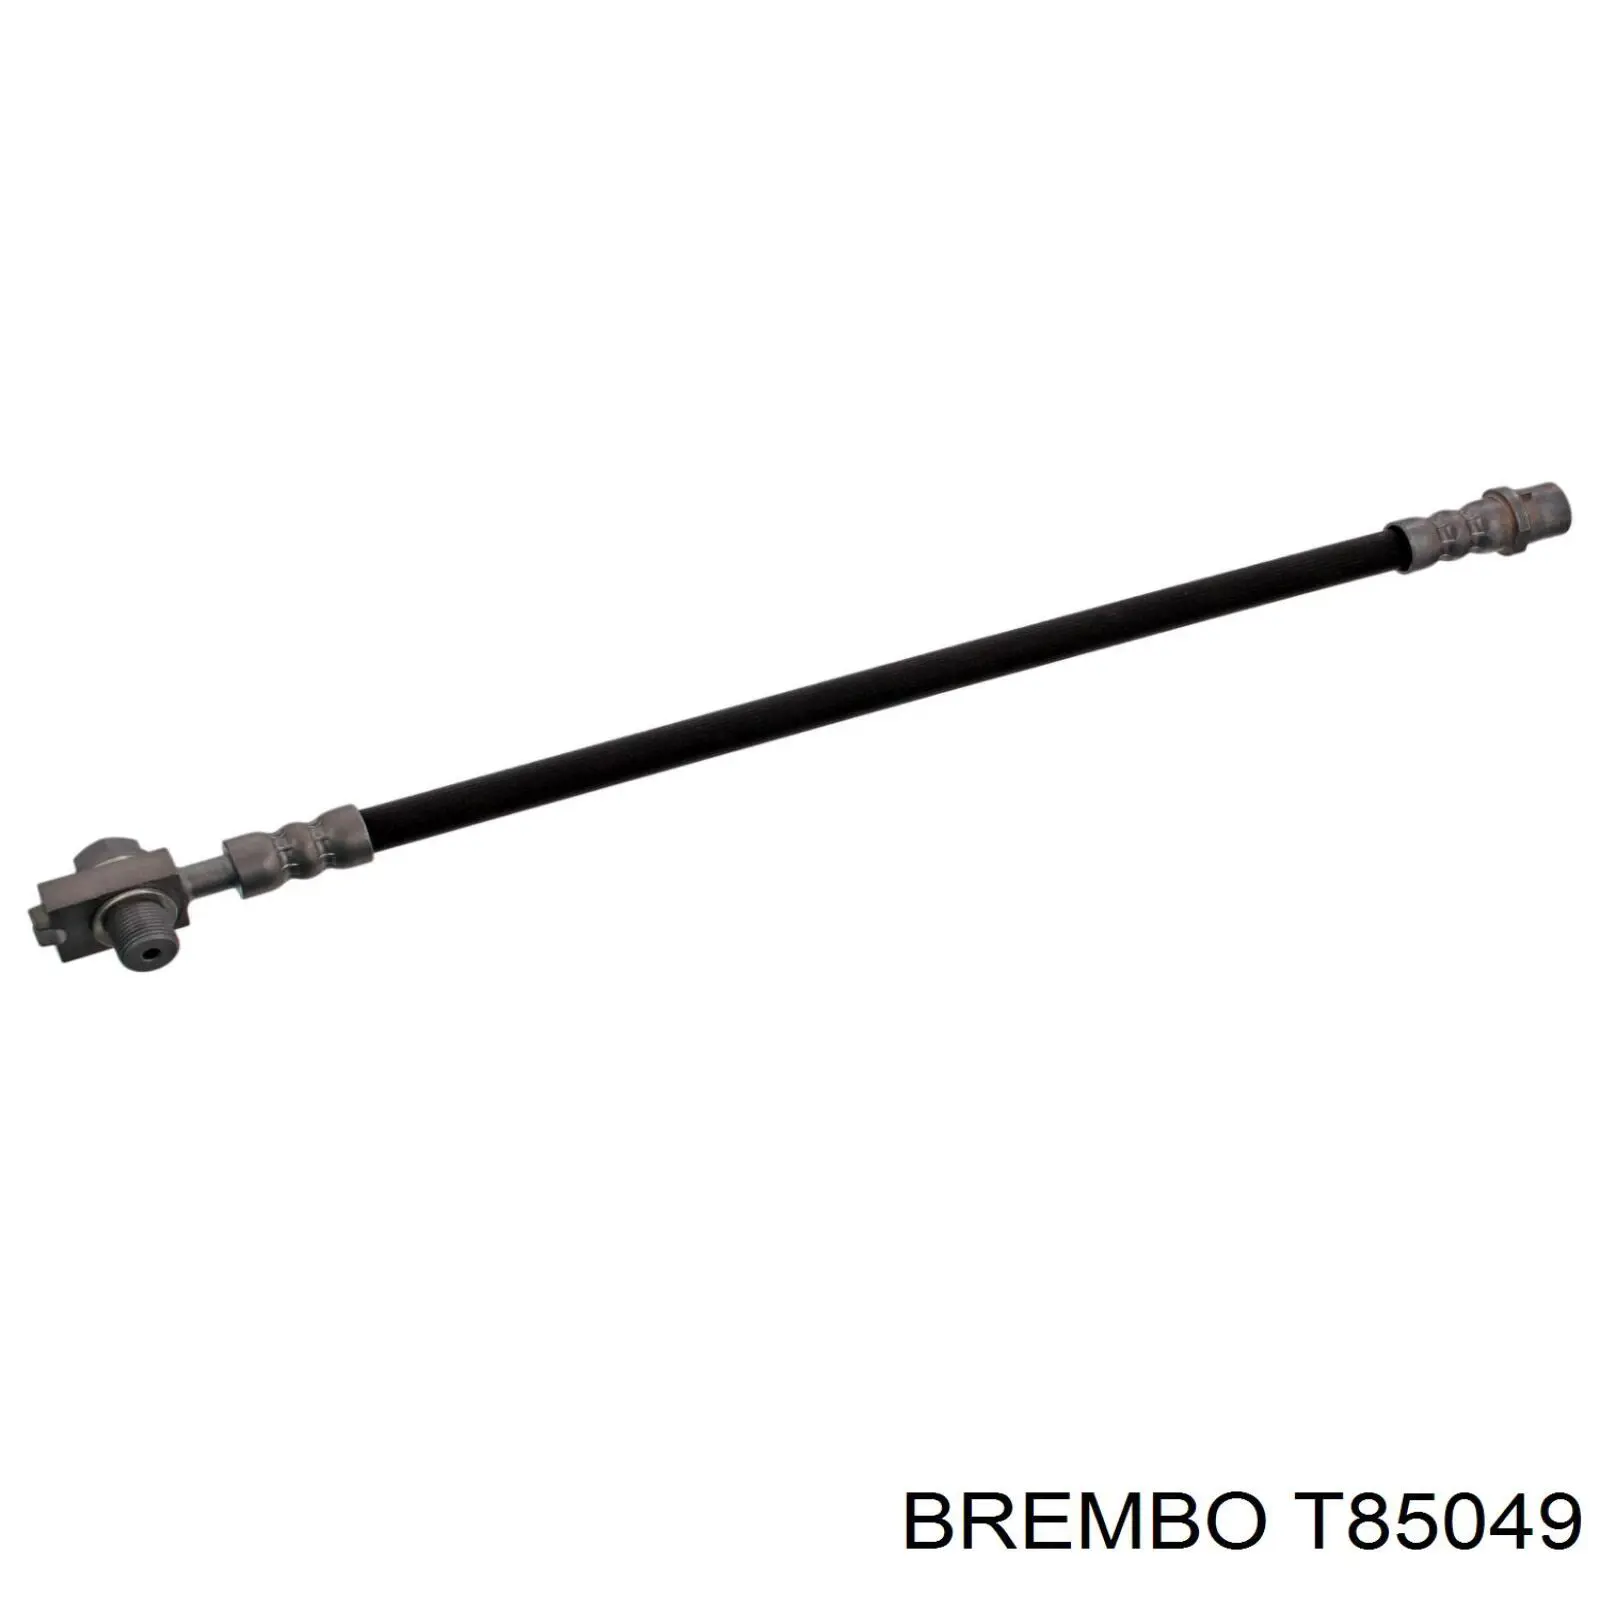 T85049 Brembo latiguillo de freno trasero